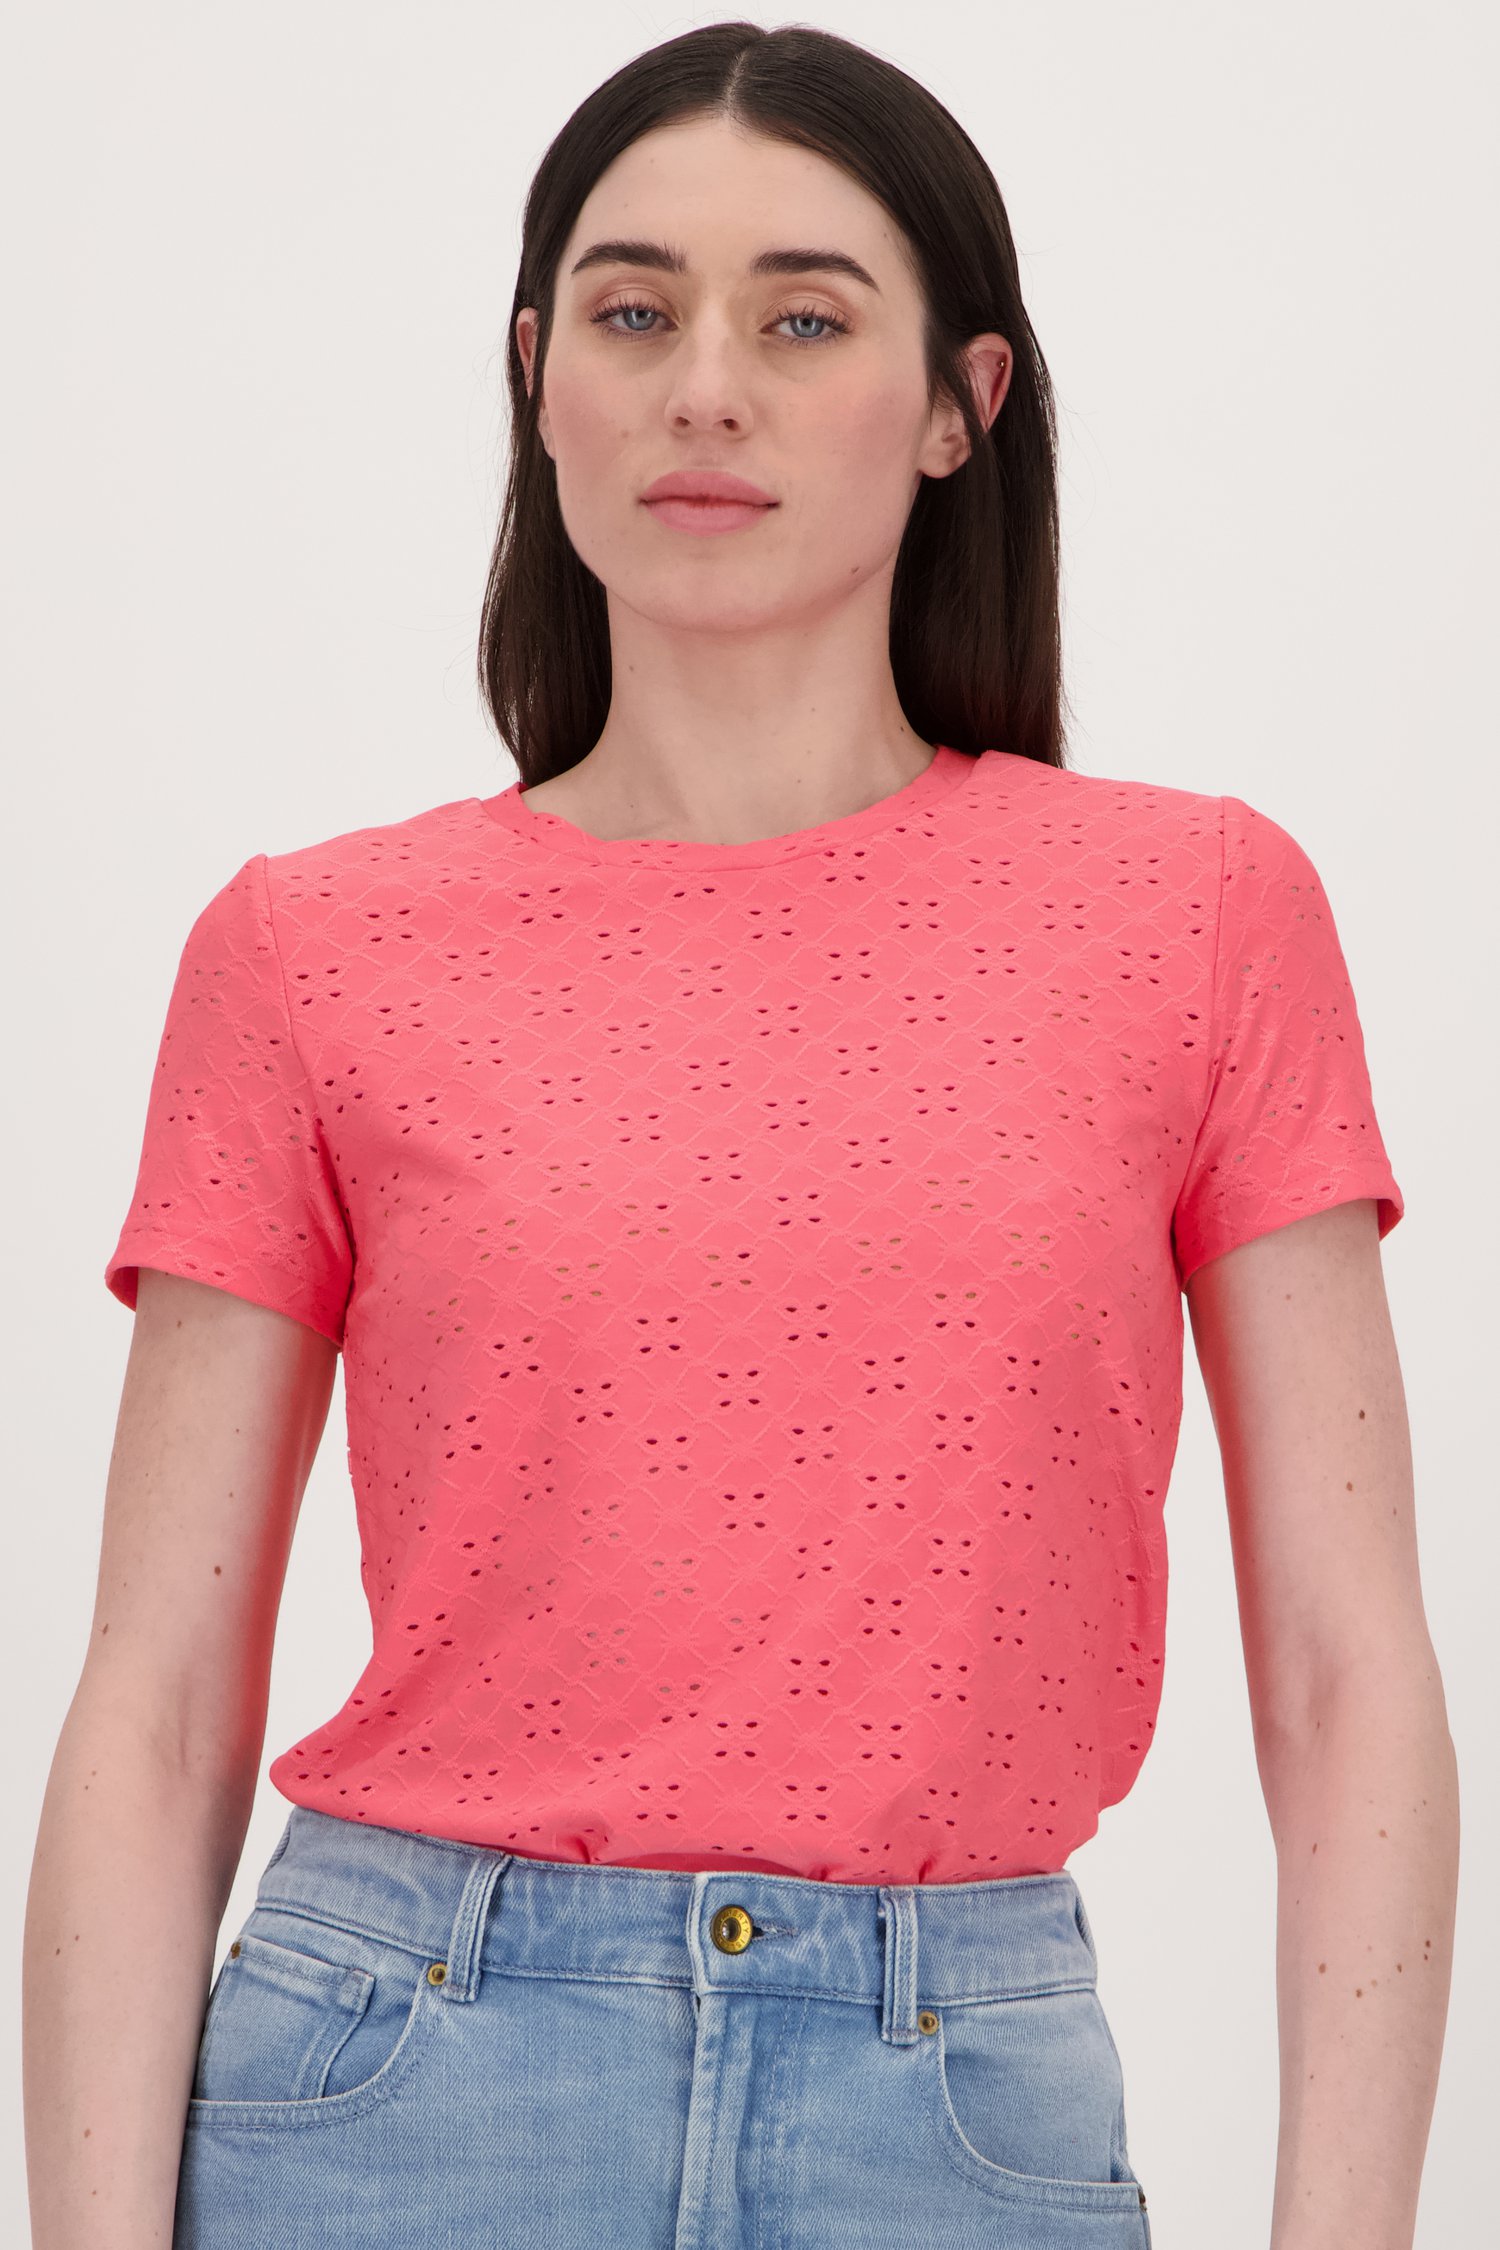 Roze T-shirt met broderie Anglaise van JDY voor Dames